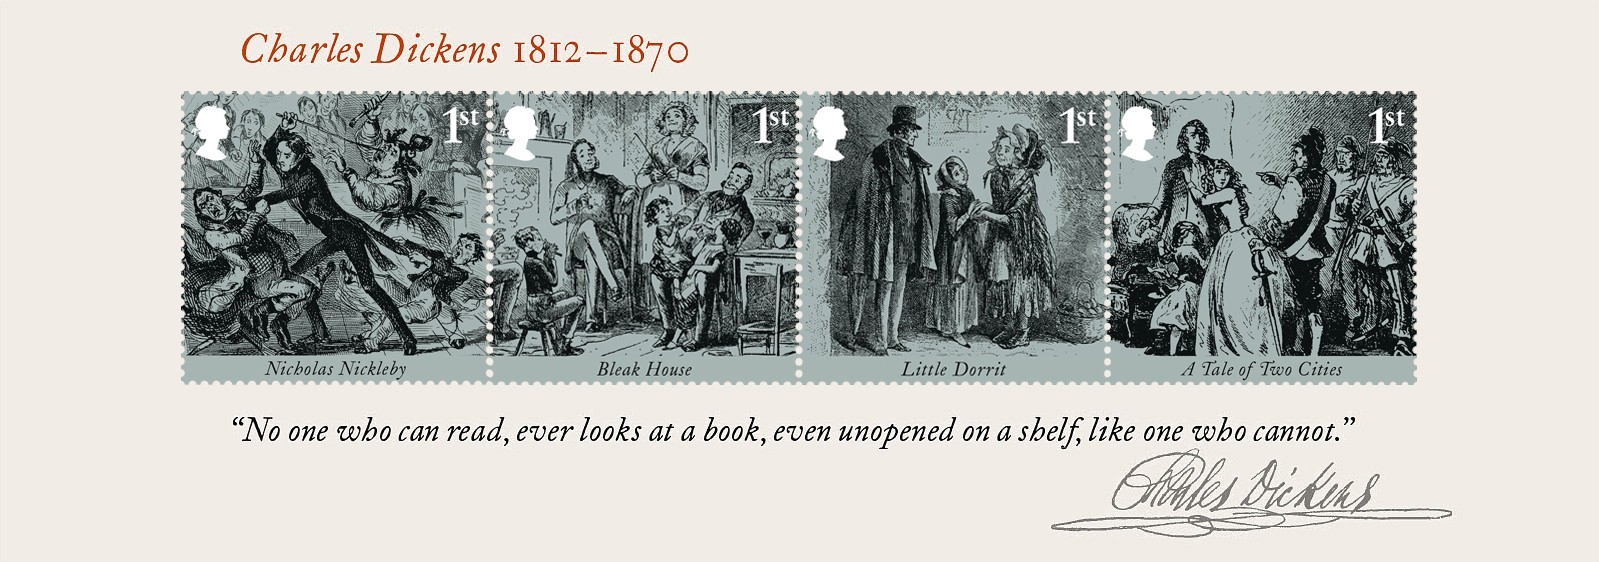 Dickens Miniature Sheet